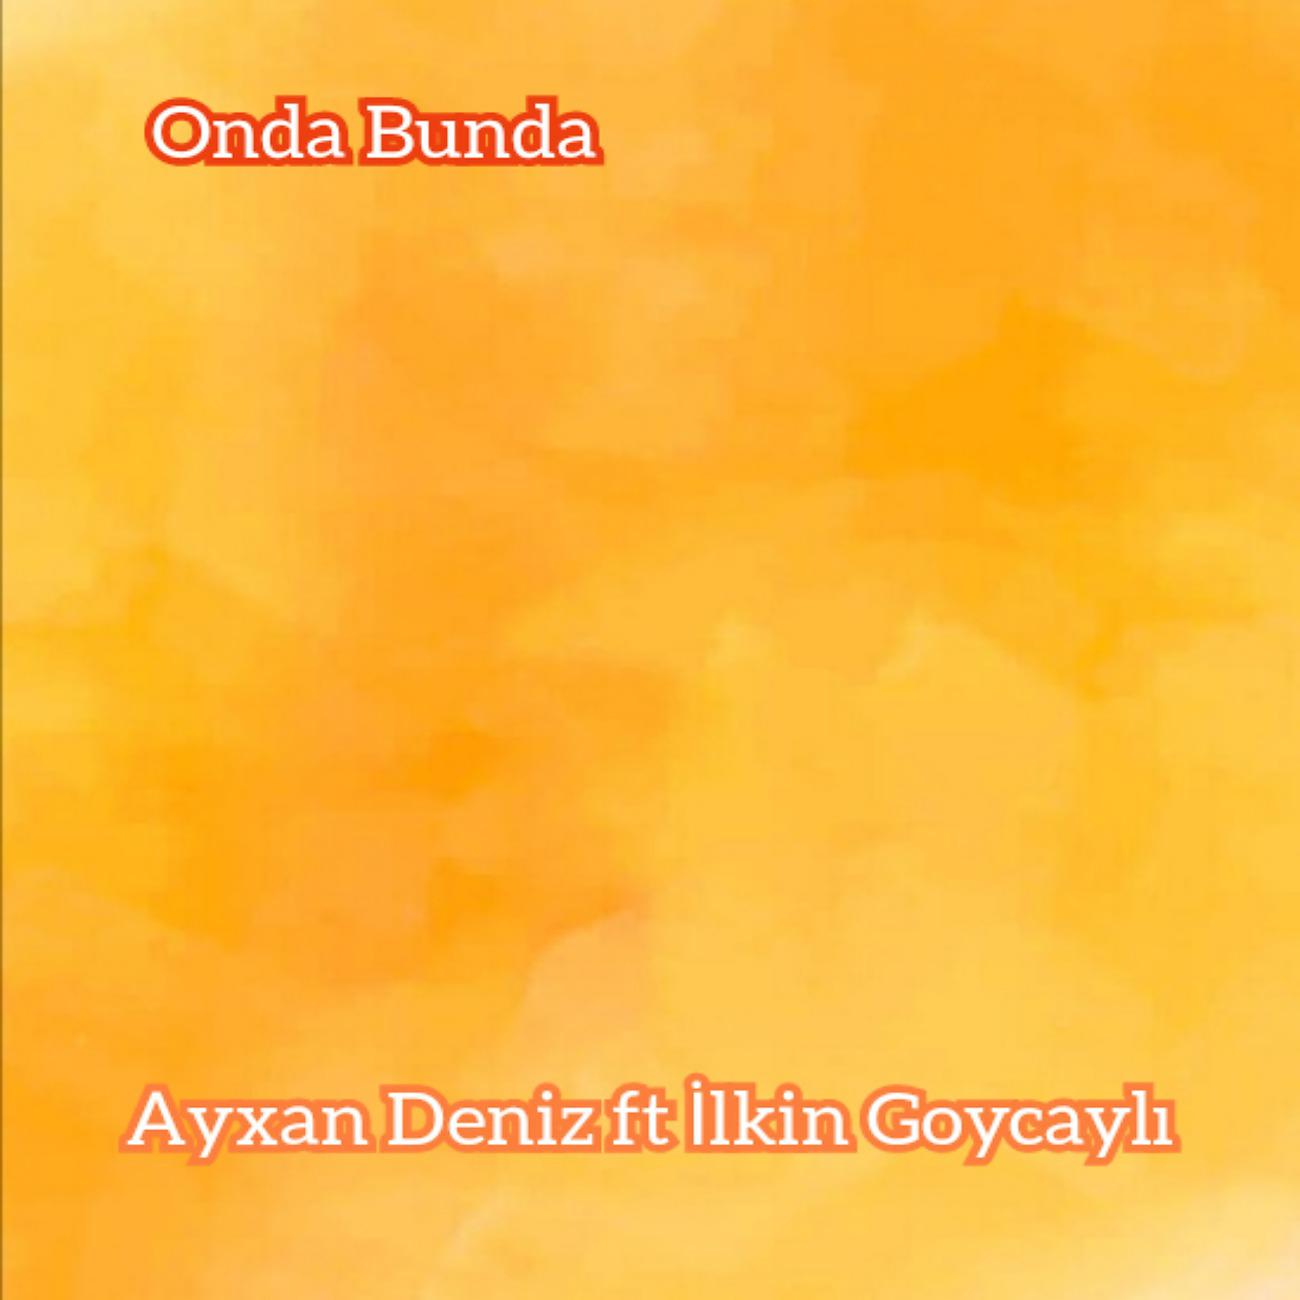 Постер альбома Onda Bunda